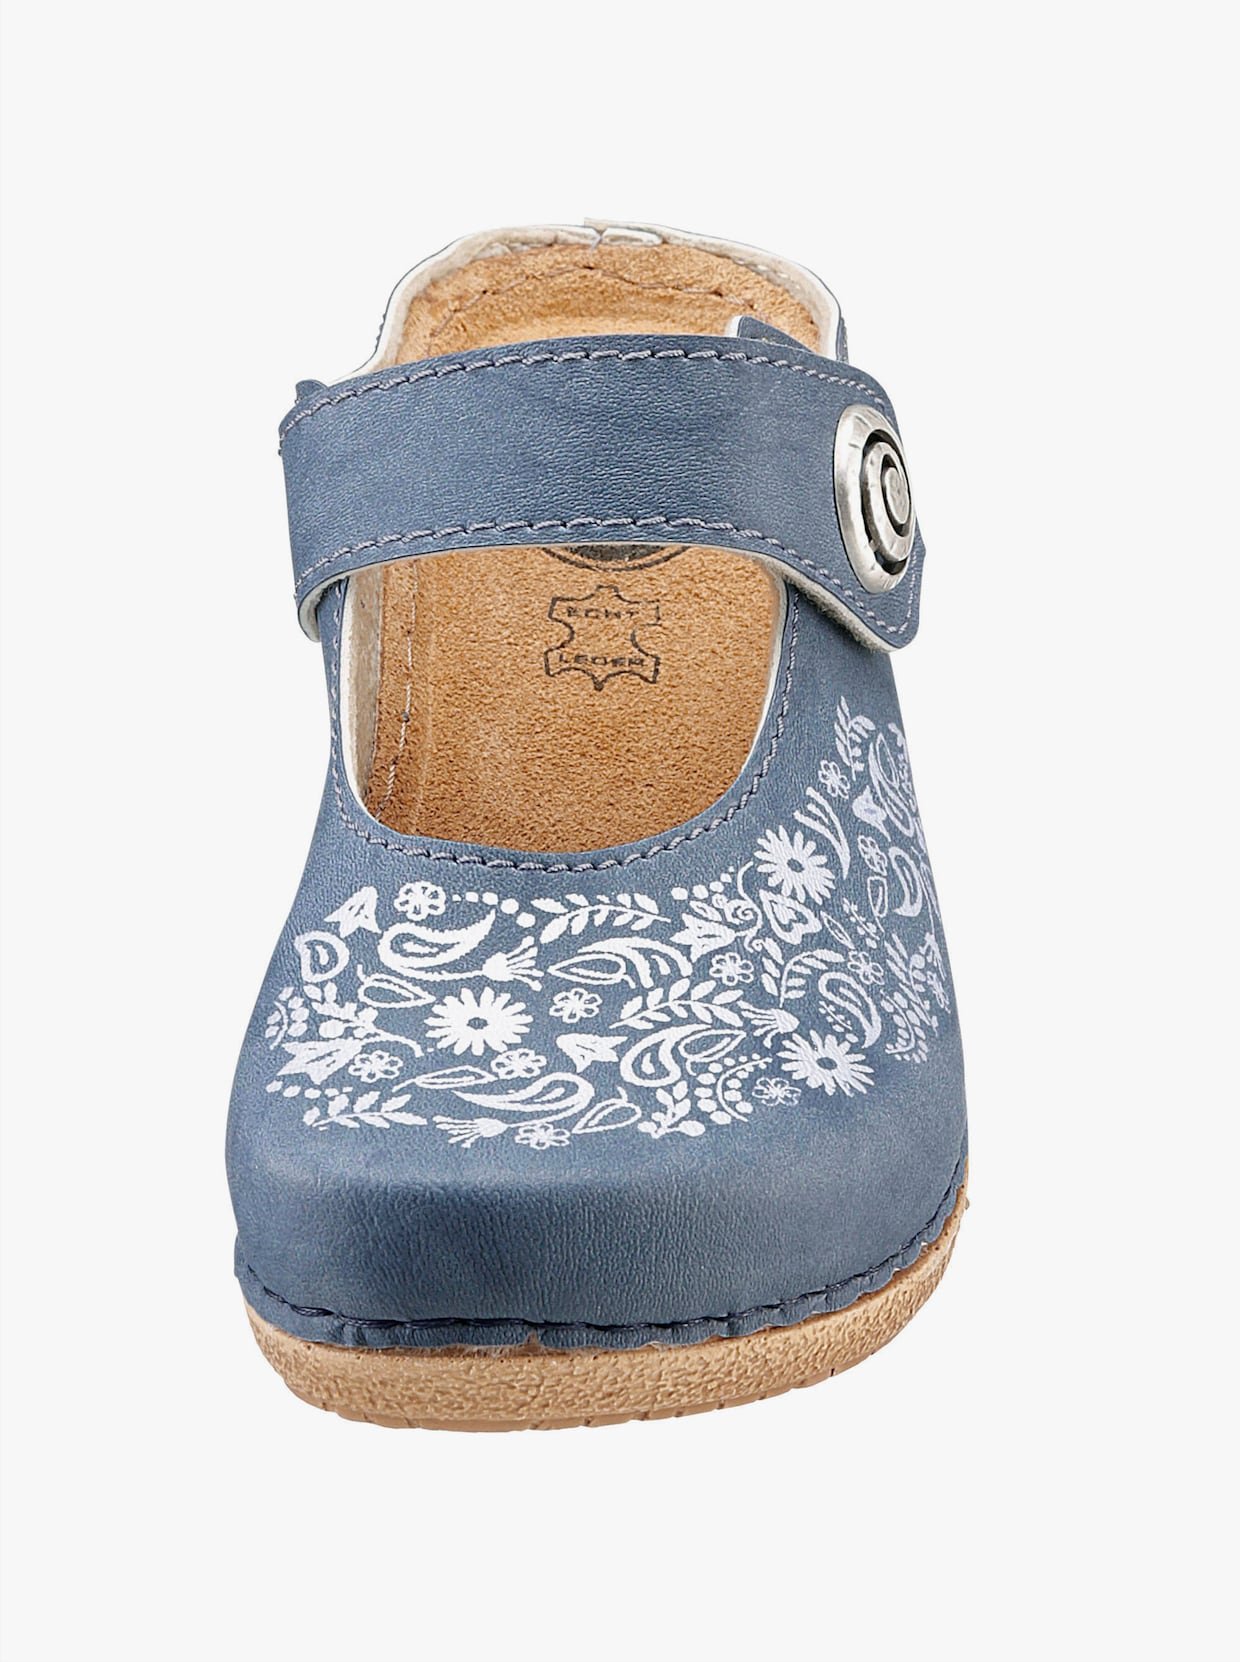 Franken Schuhe Clogs - jeansblå